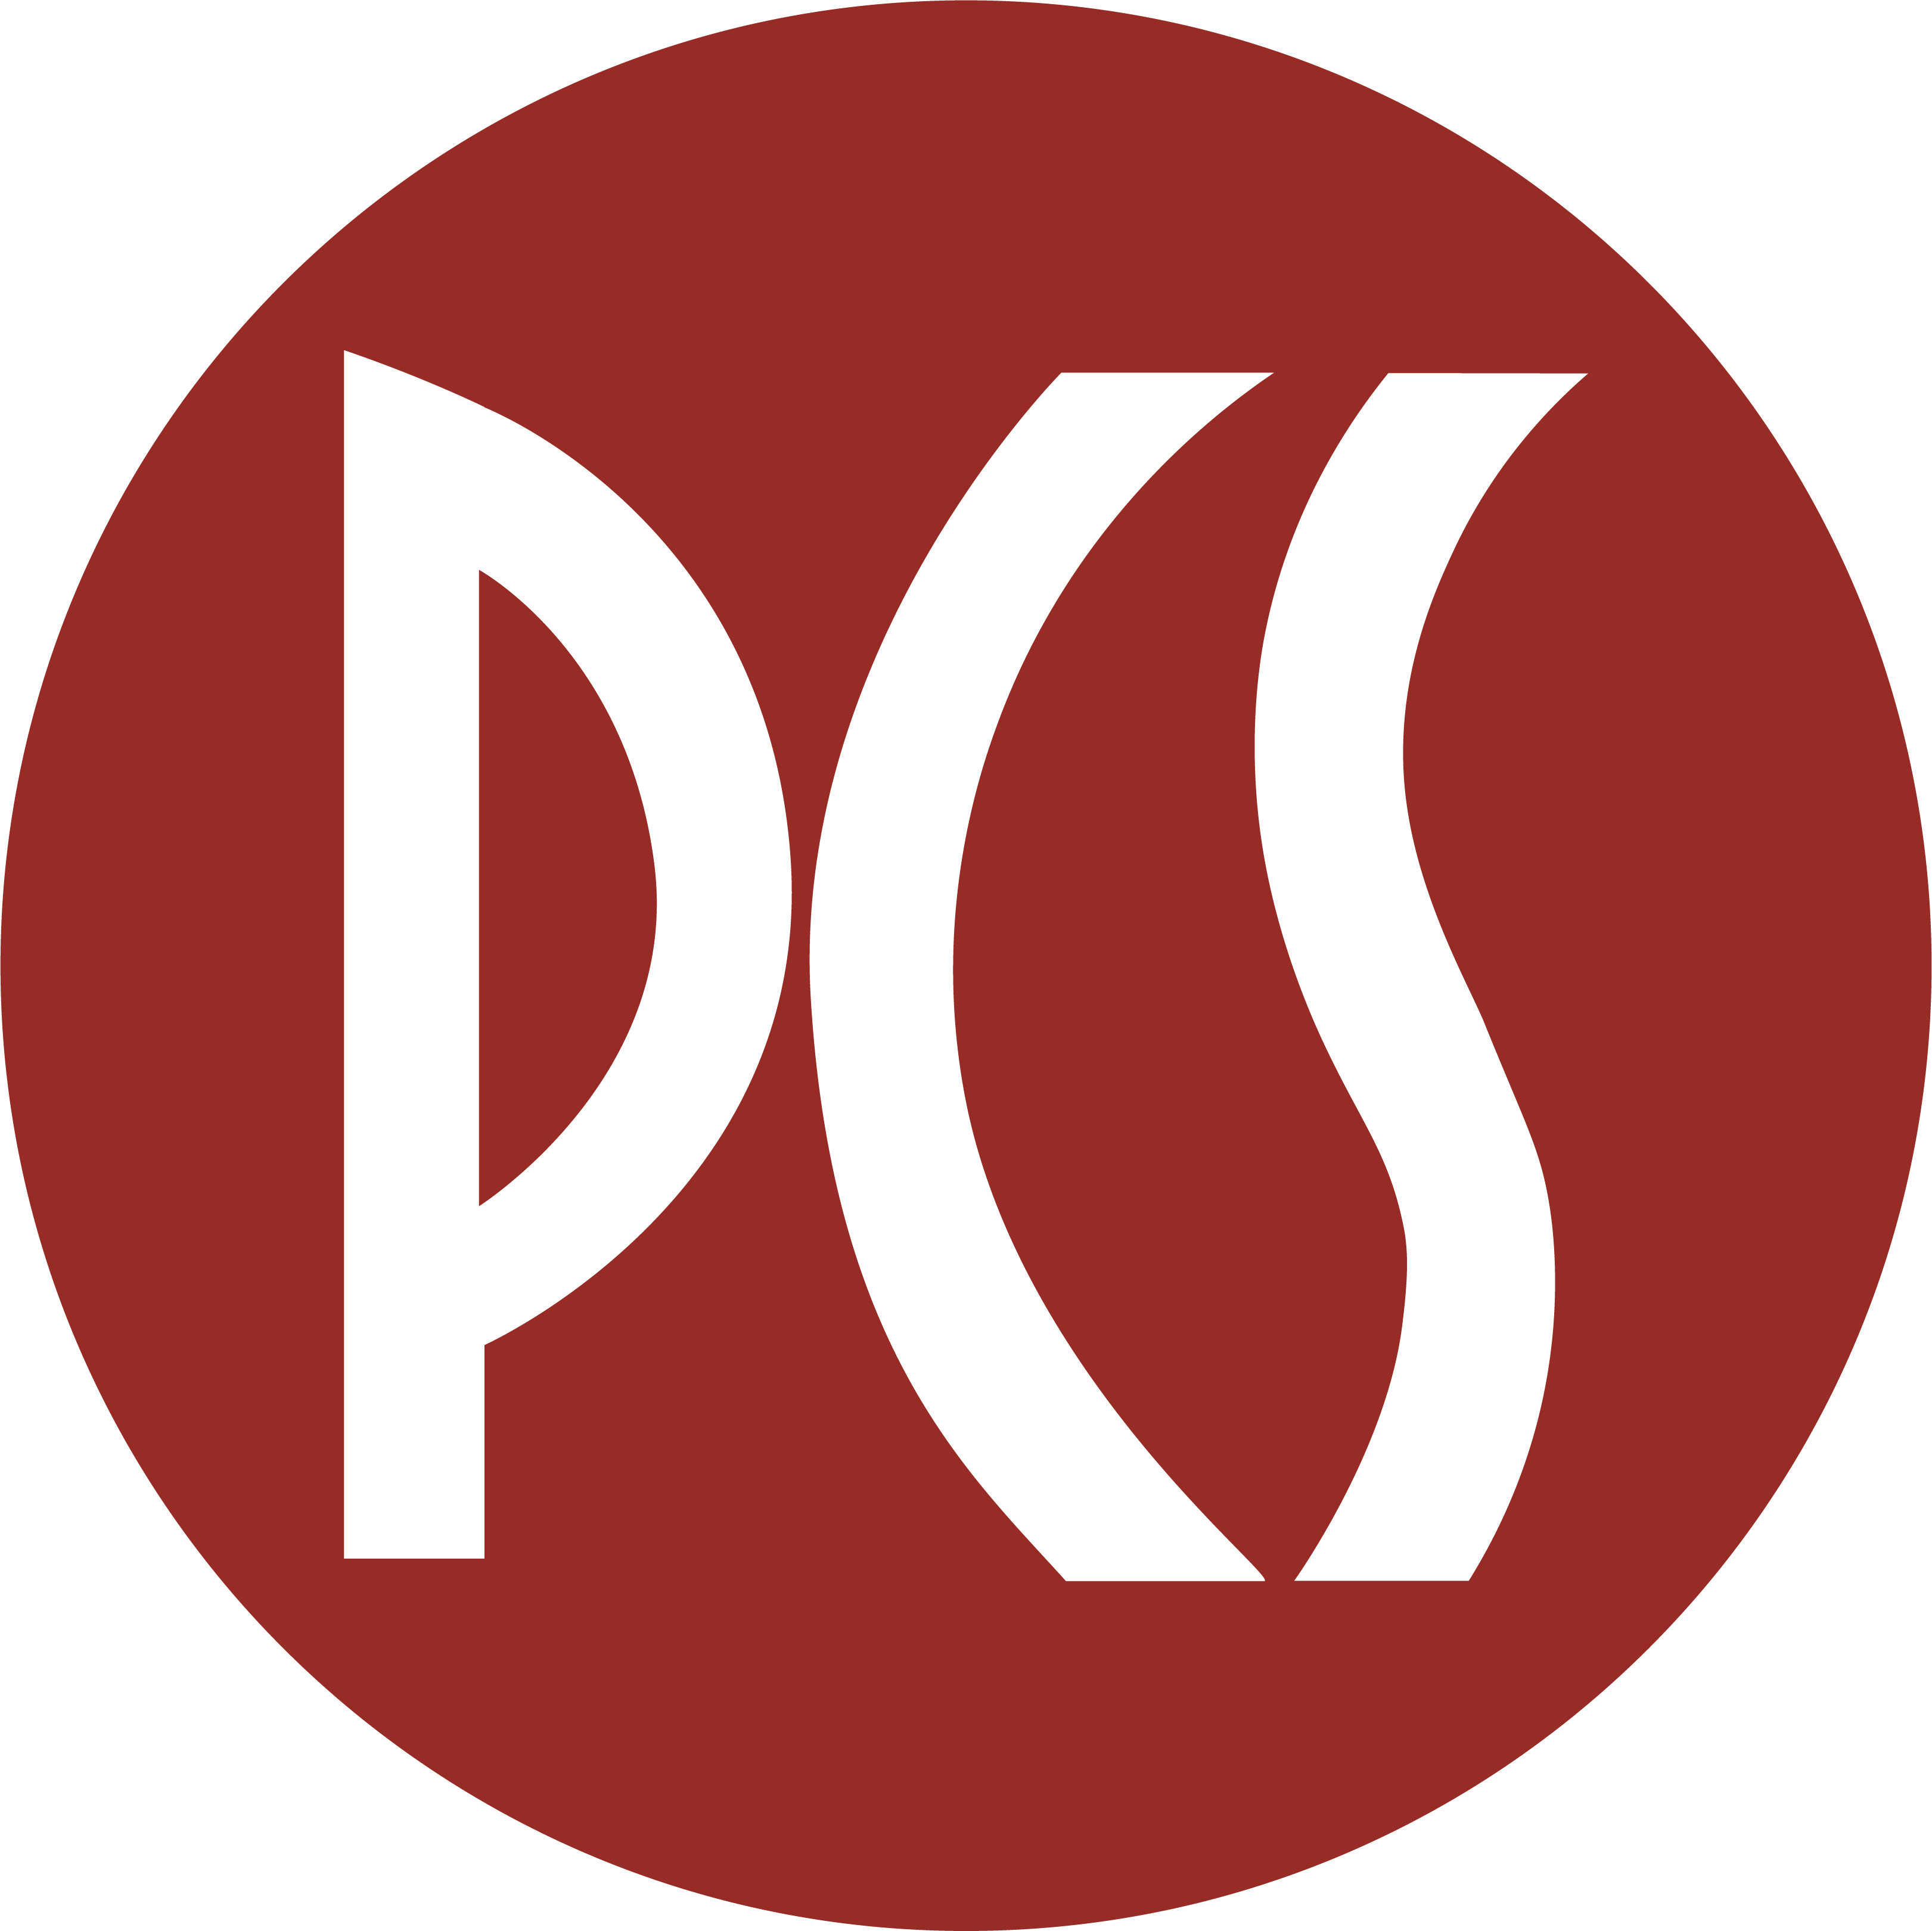 Petaluma City Schools Logo